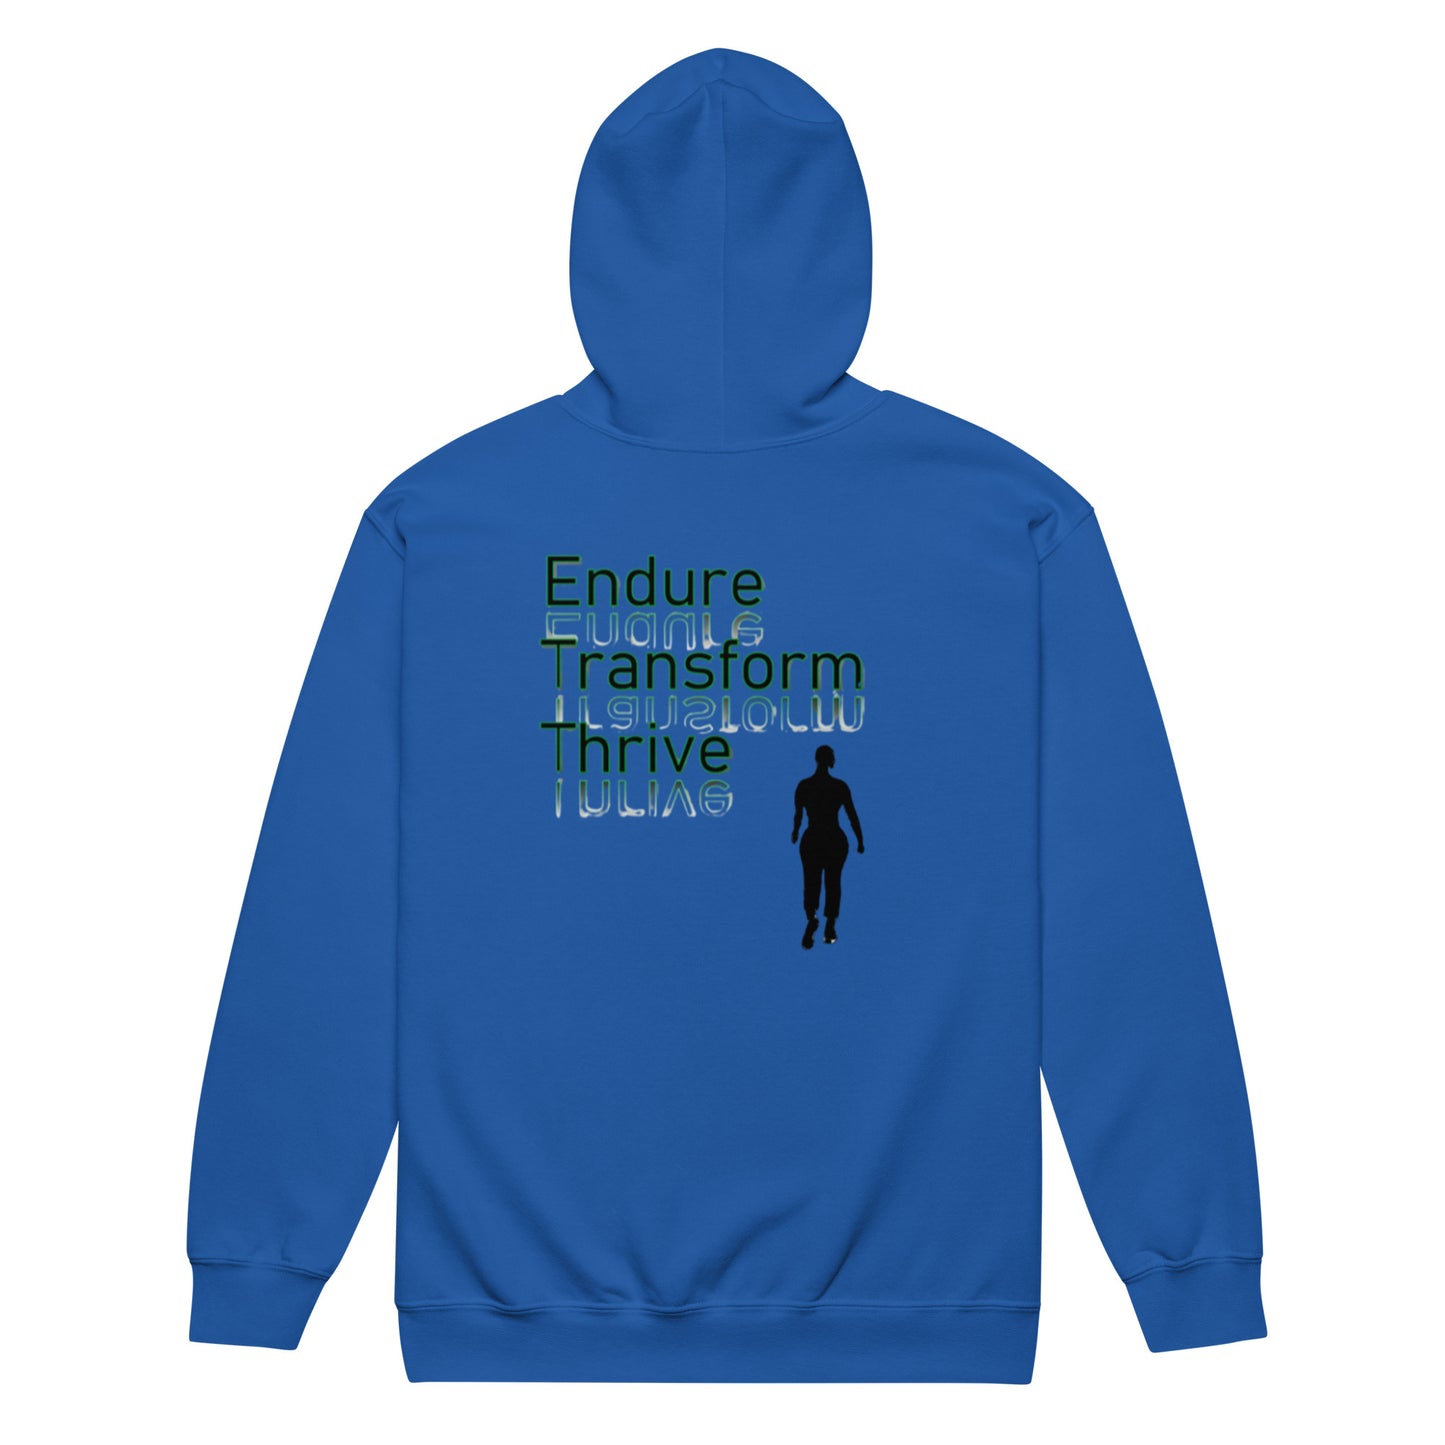 .Endure, Transform, Thrive Ladies heavy blend zip hoodie